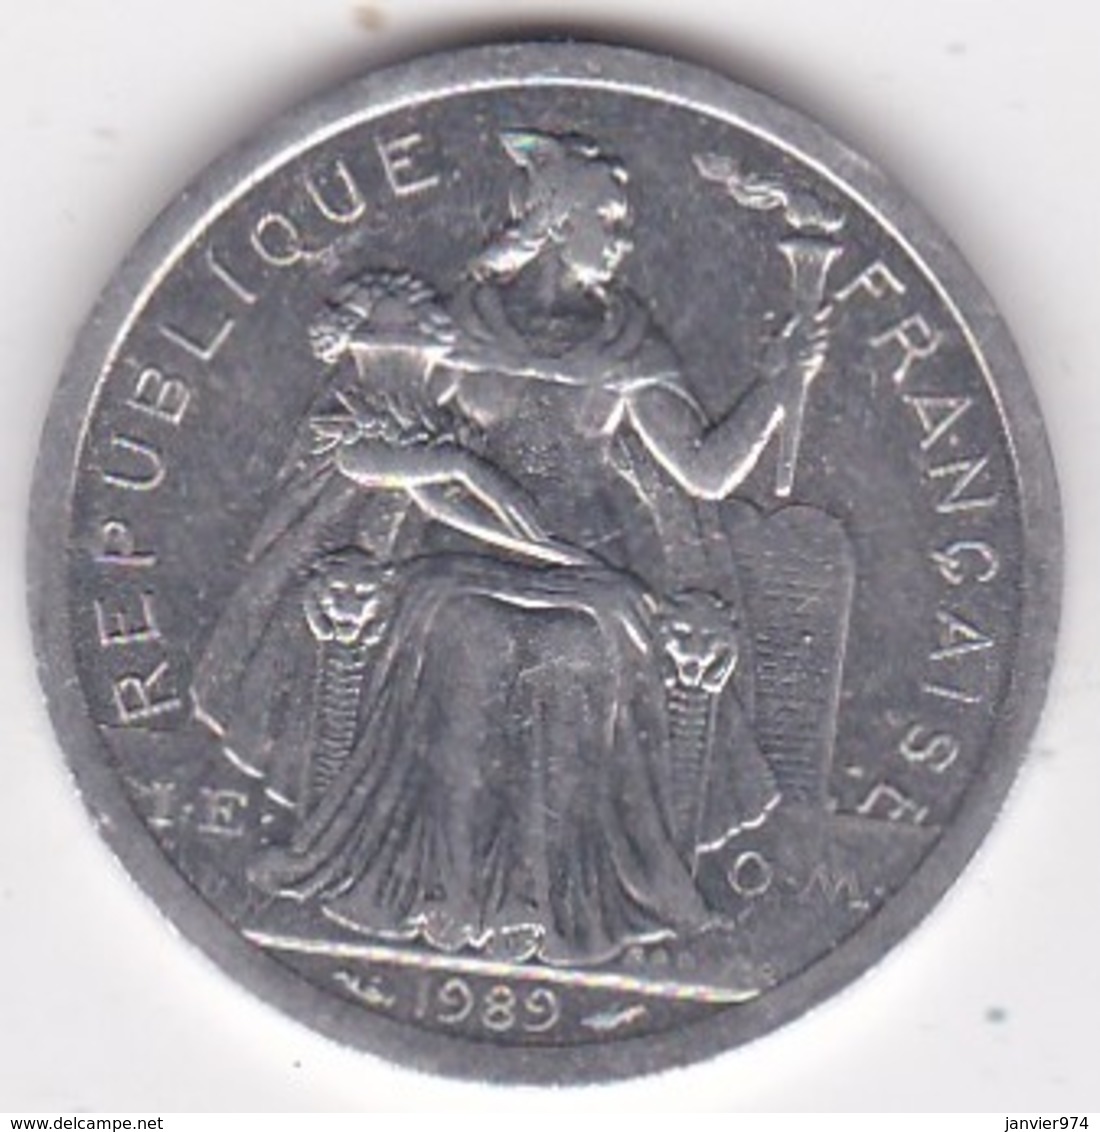 Nouvelle-Calédonie . 2 Francs 1989. Aluminium. - Nouvelle-Calédonie